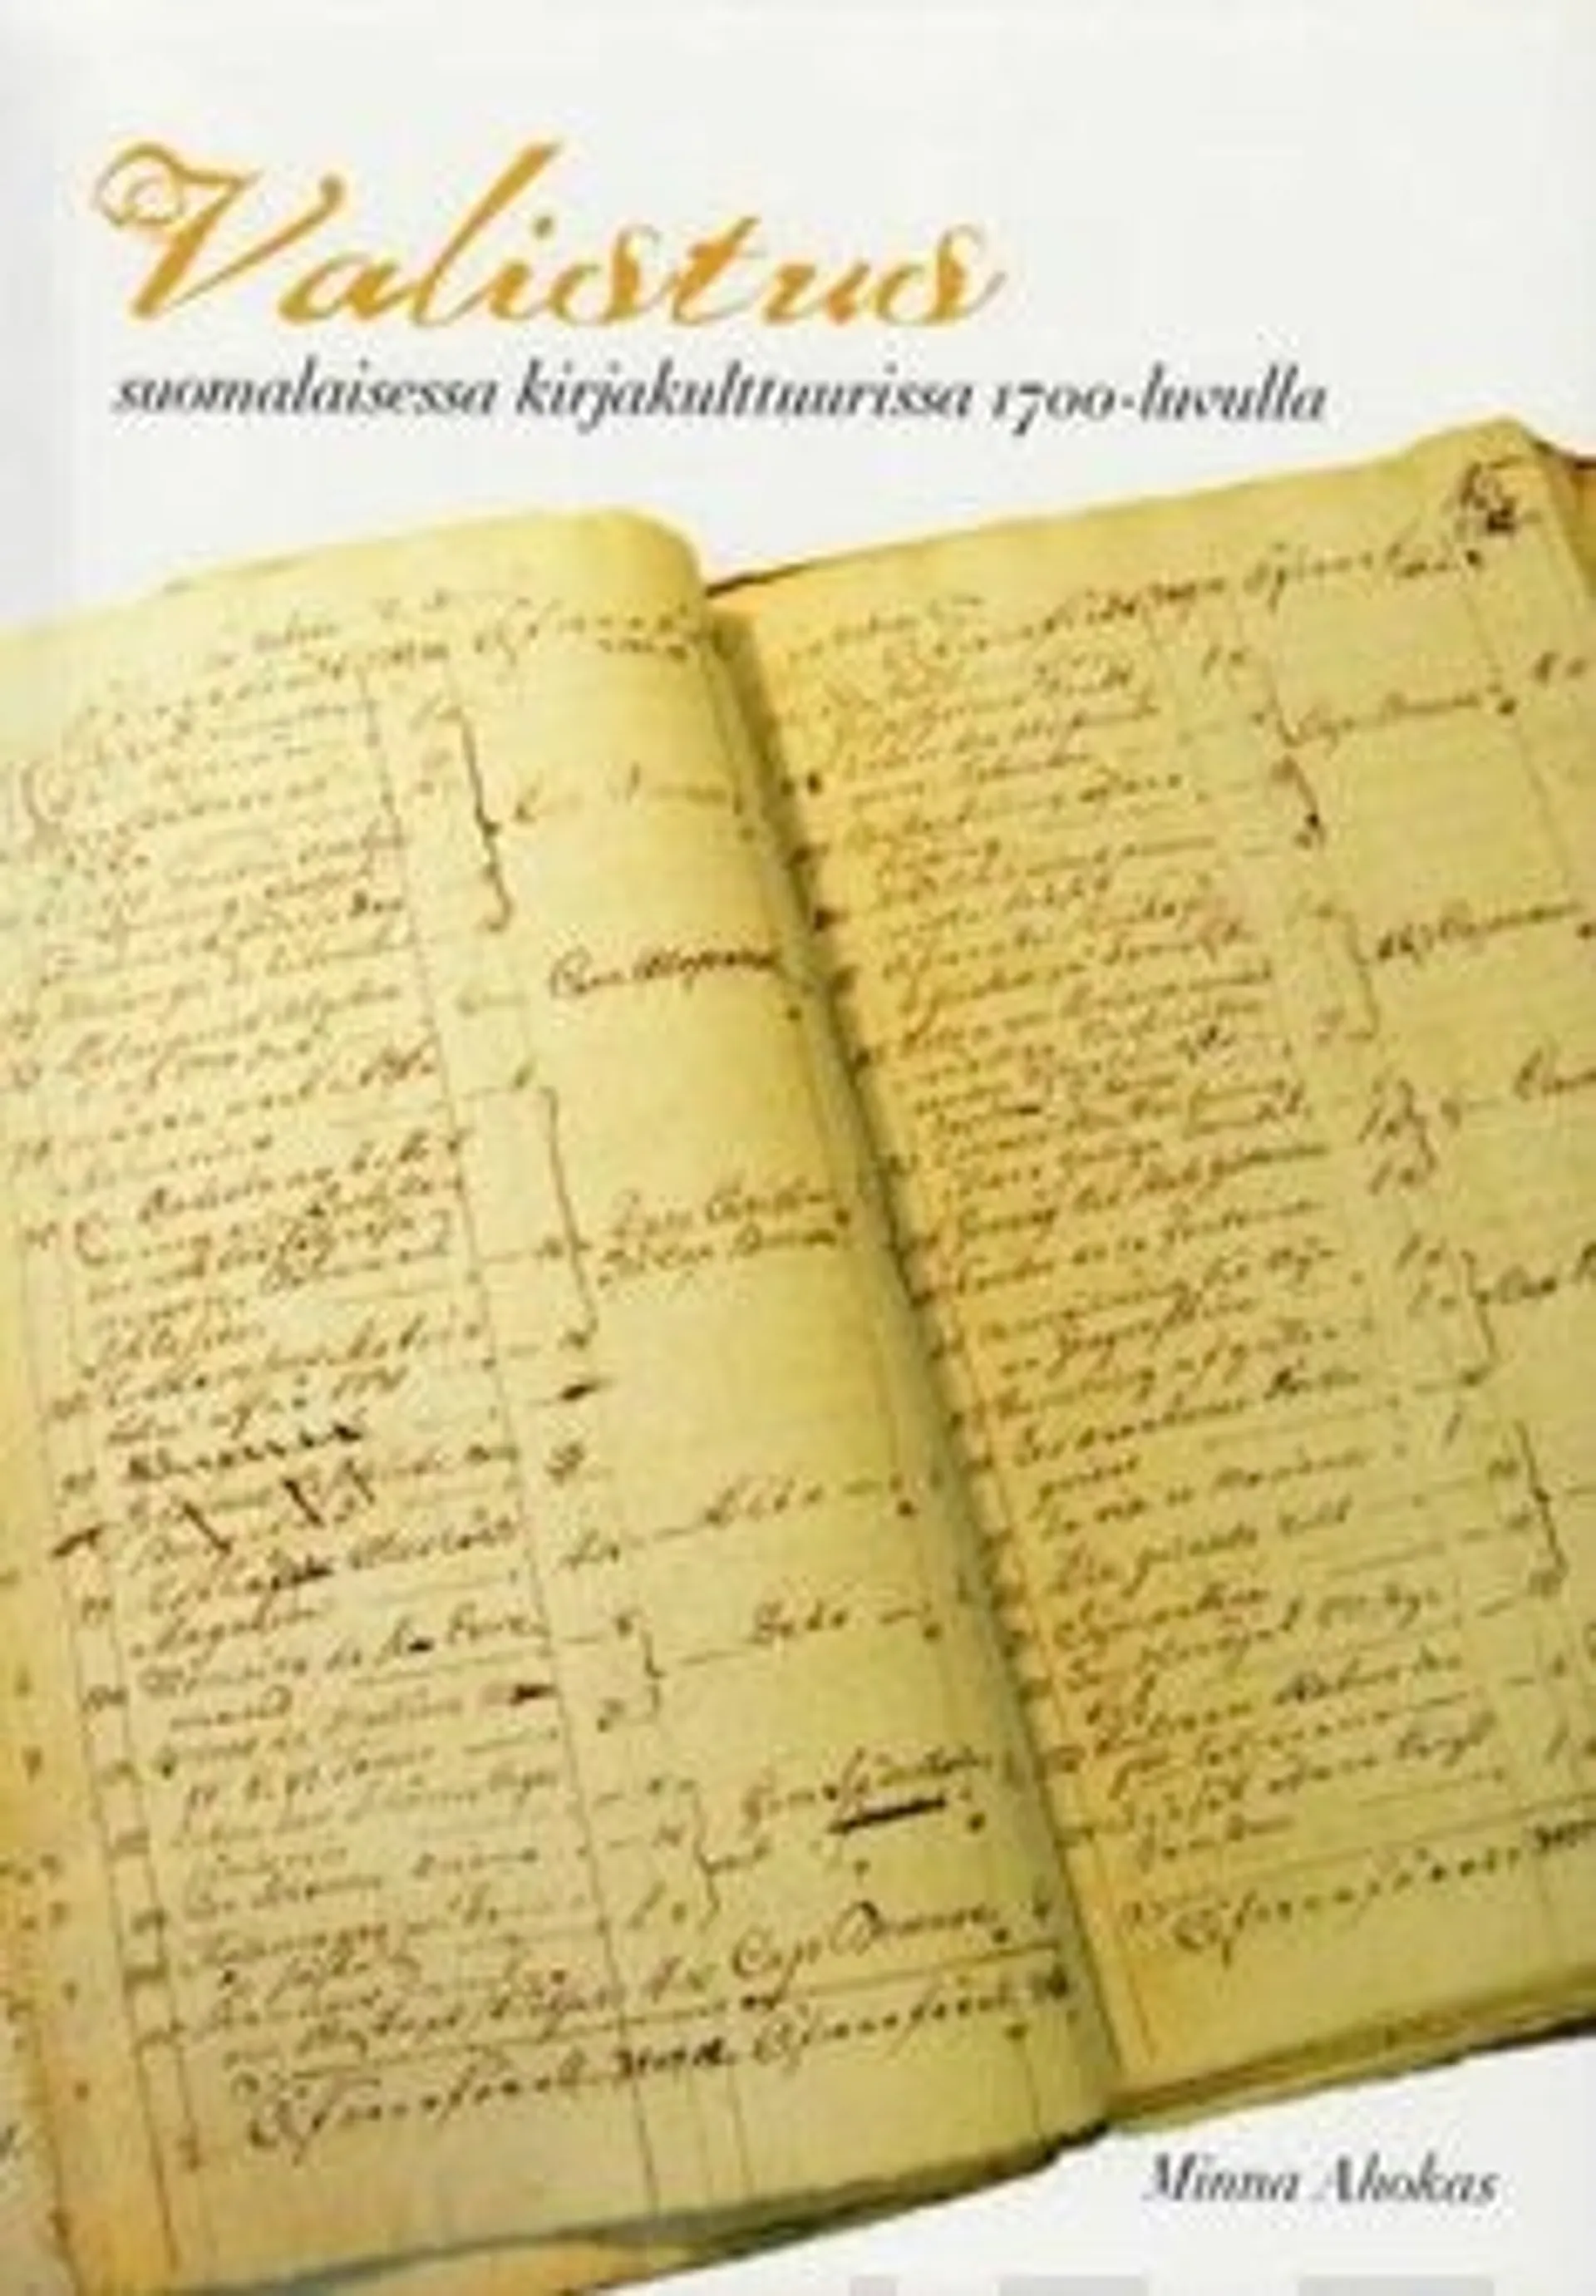 Ahokas, Valistus suomalaisessa kirjakulttuurissa 1700-luvulla